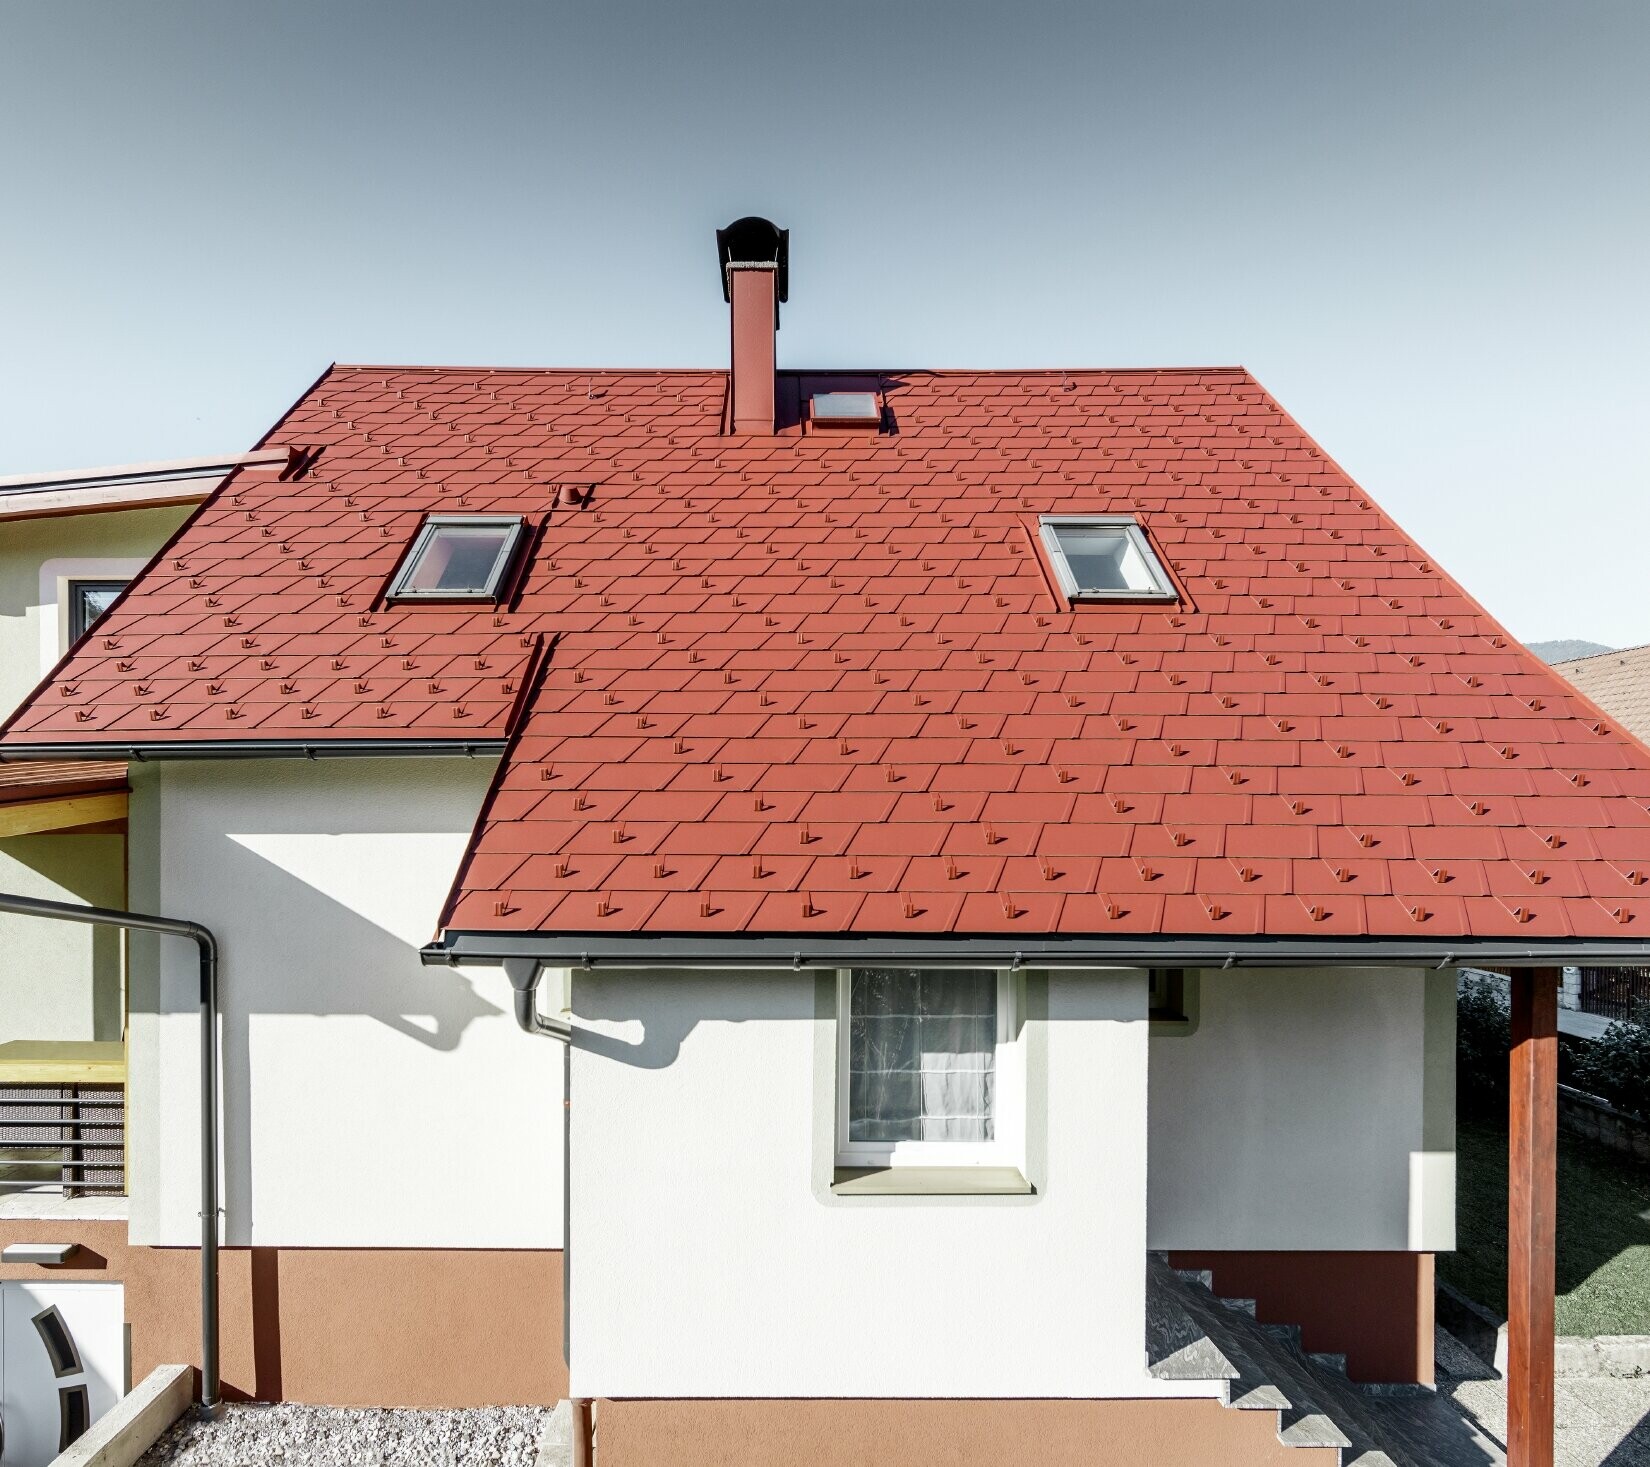 Dom jednorodzinny po renowacji z nową dachówką łupkową PREFA na dachu. Wykorzystano dachówkę DS.19 w kolorze czerwonym tlenkowym.